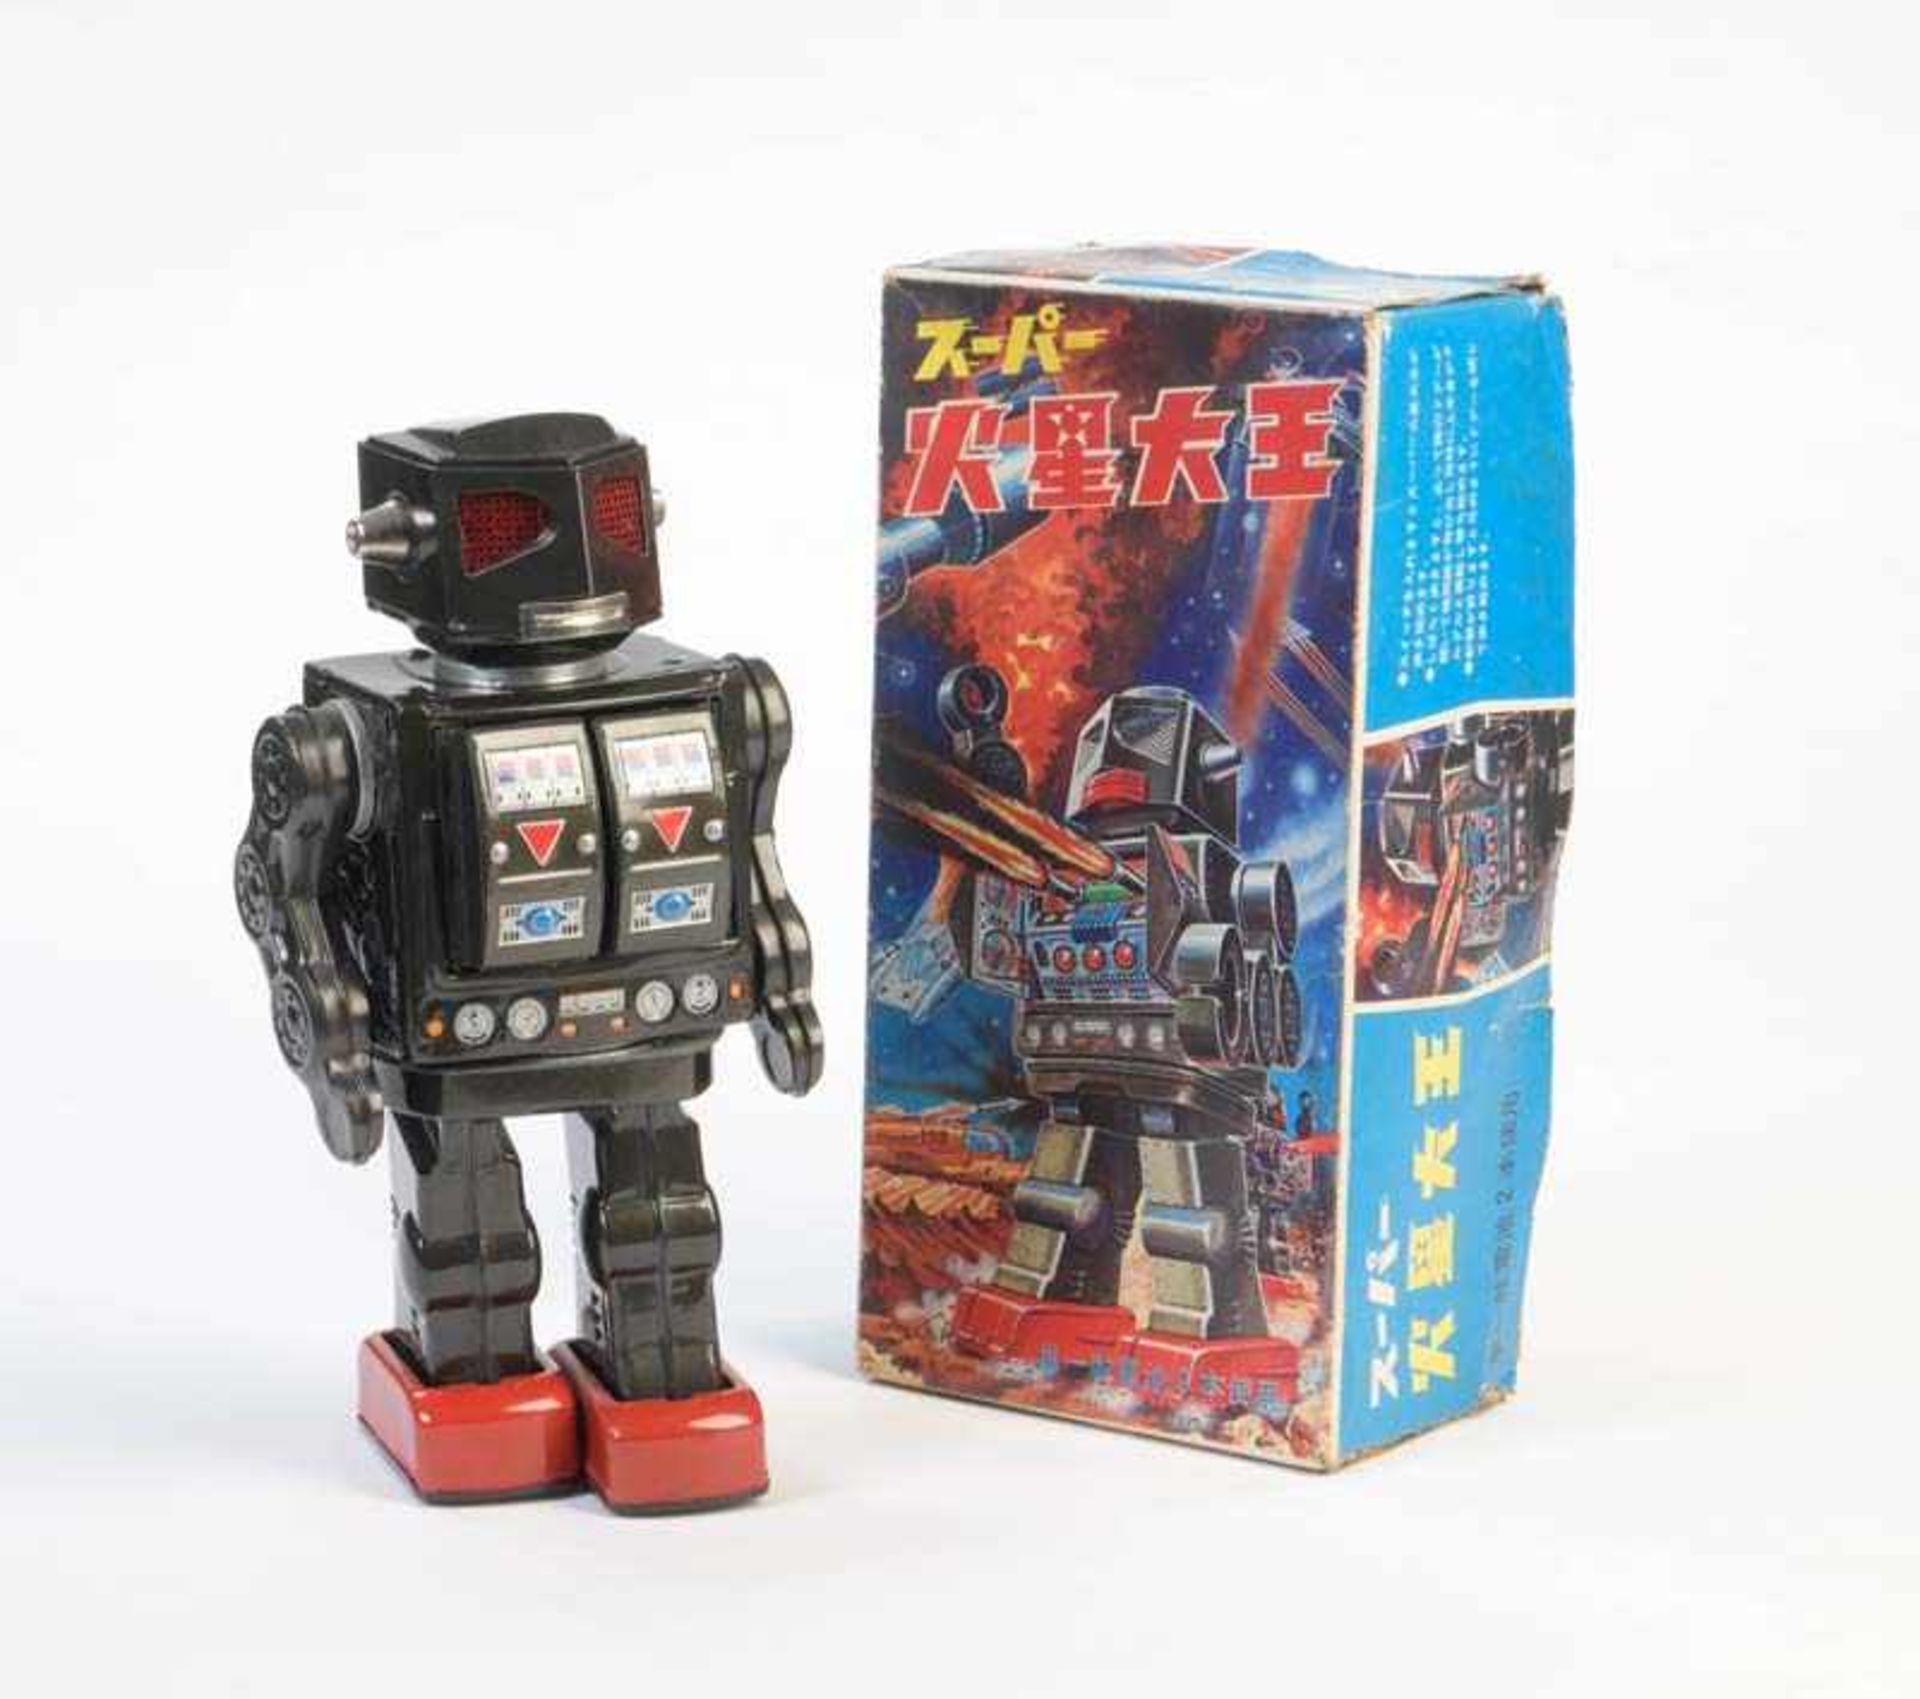 Horikawa, Roboter, Japan, 29 cm, Blech, Funktion ok, Okt Z 2, Z 1- Horikawa, Roboter, Japan, tin,